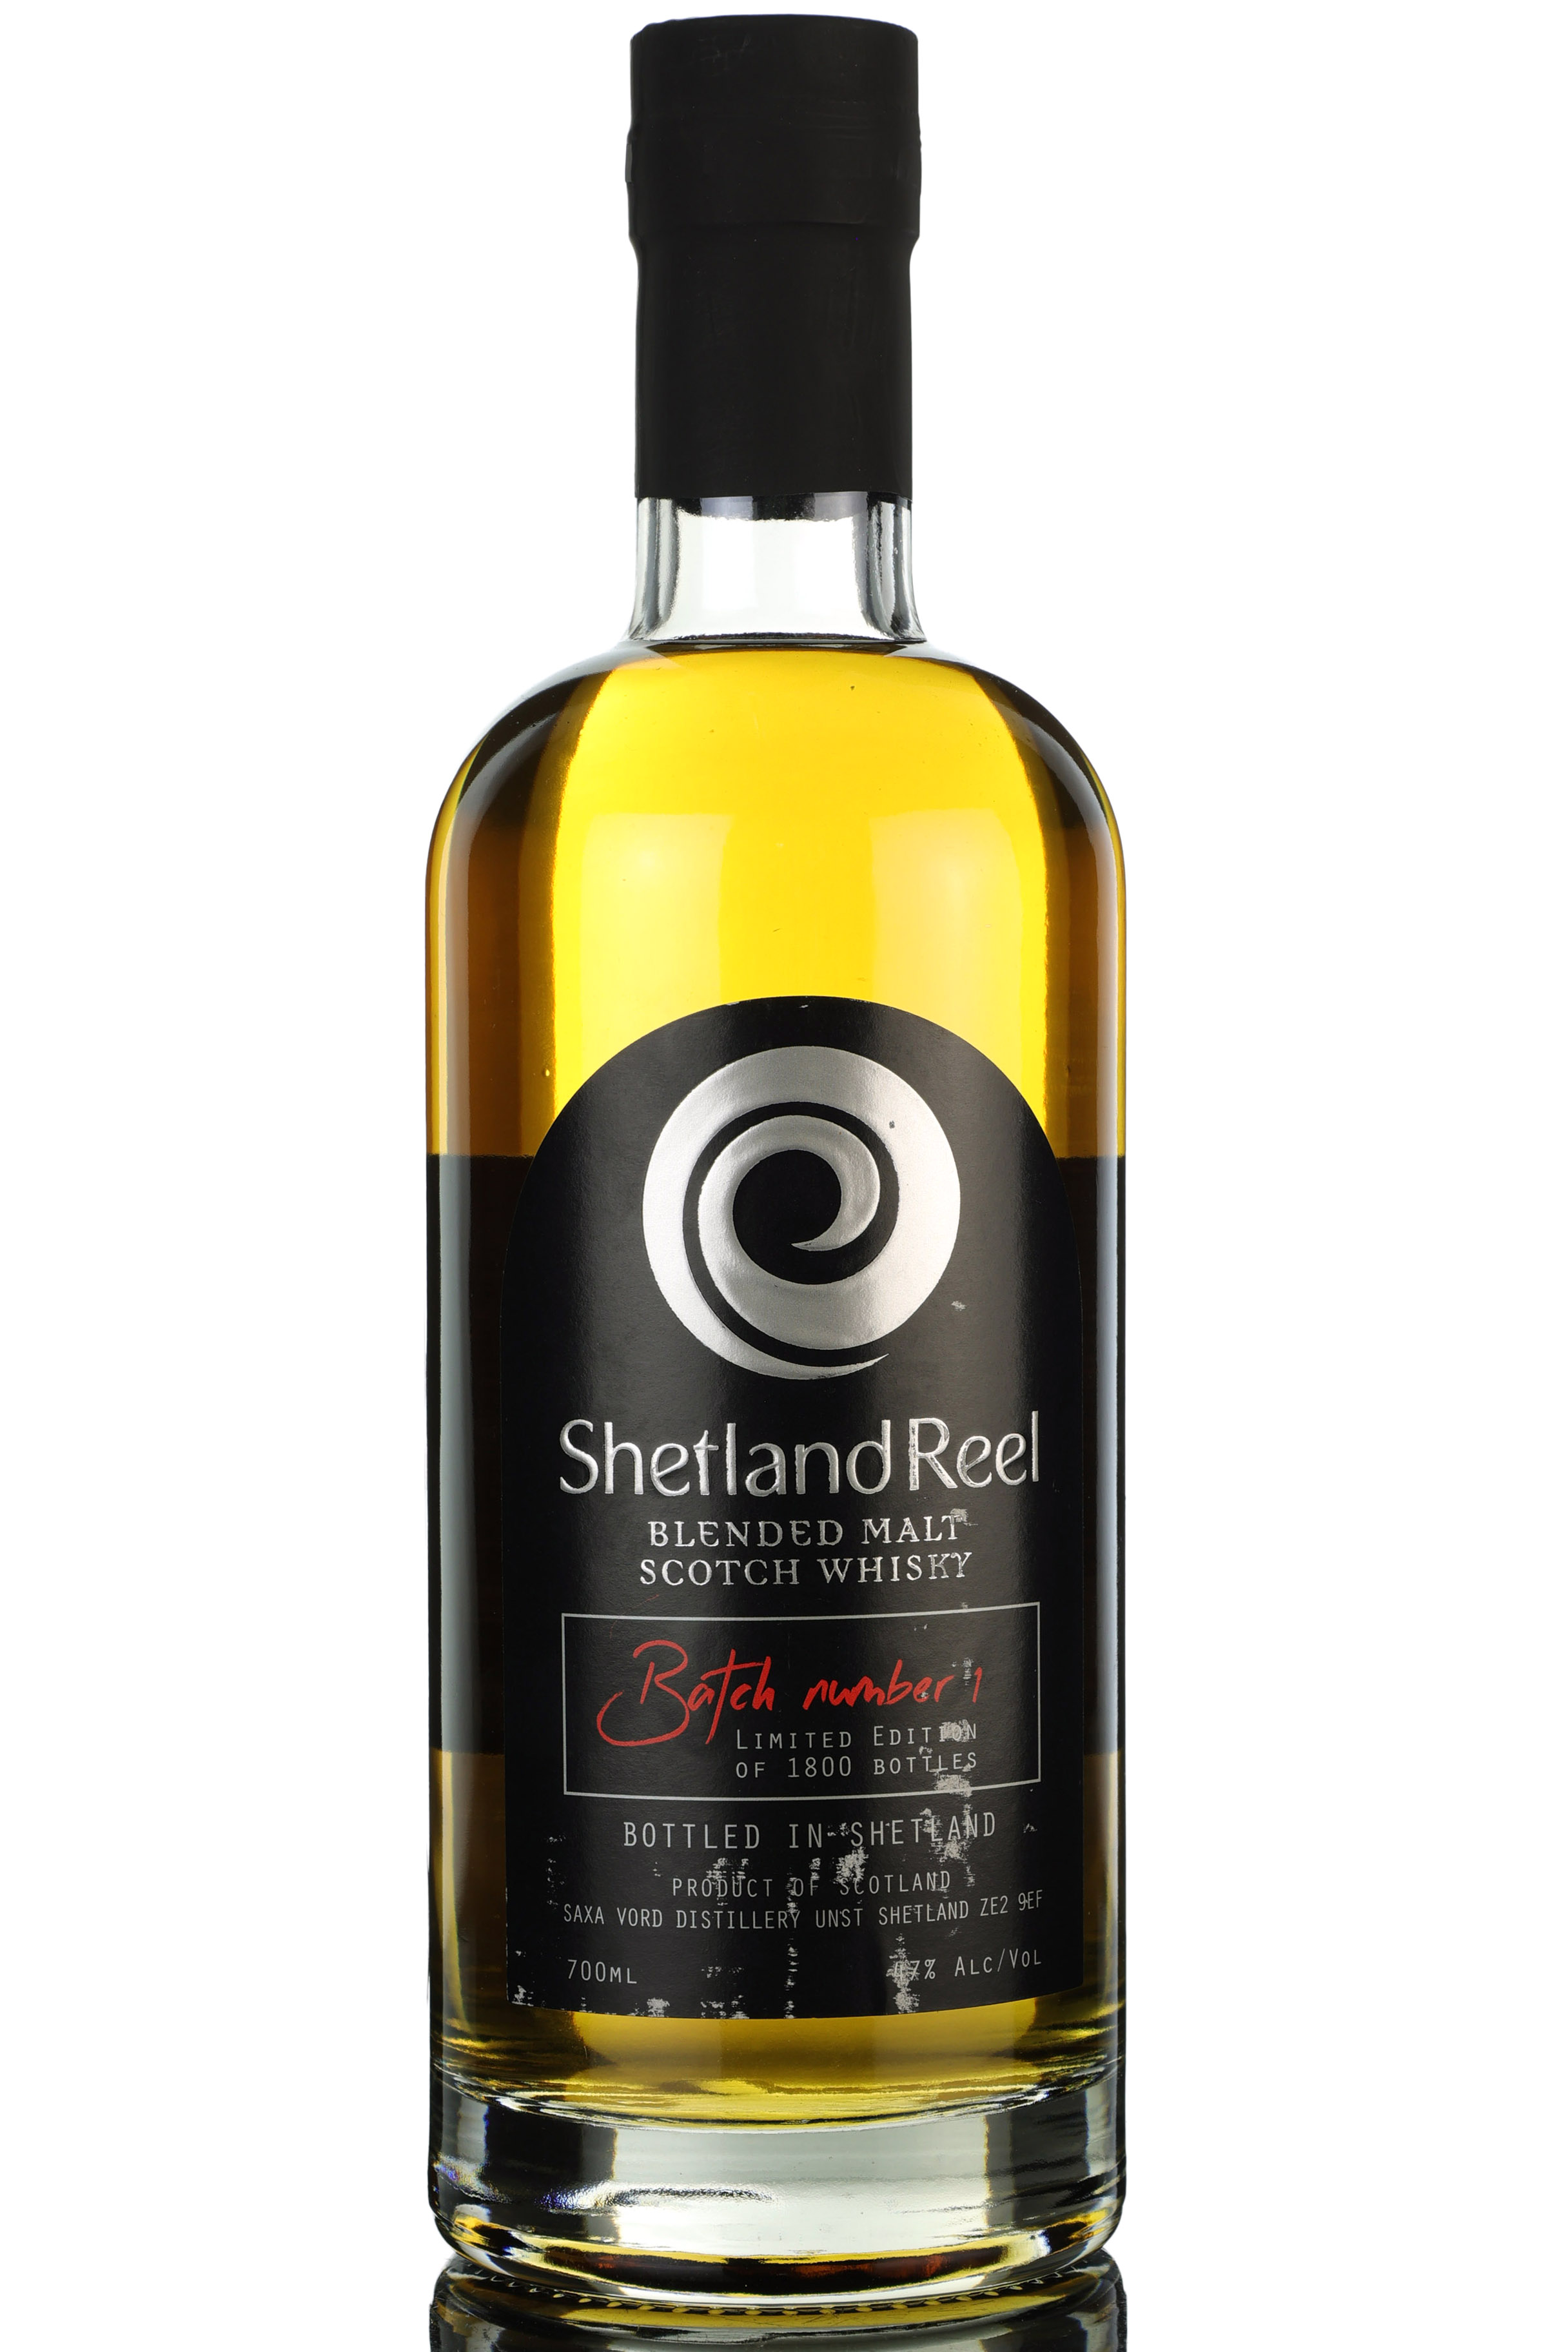 Shetland Reel - Saxa Vord Distillery - Batch 1